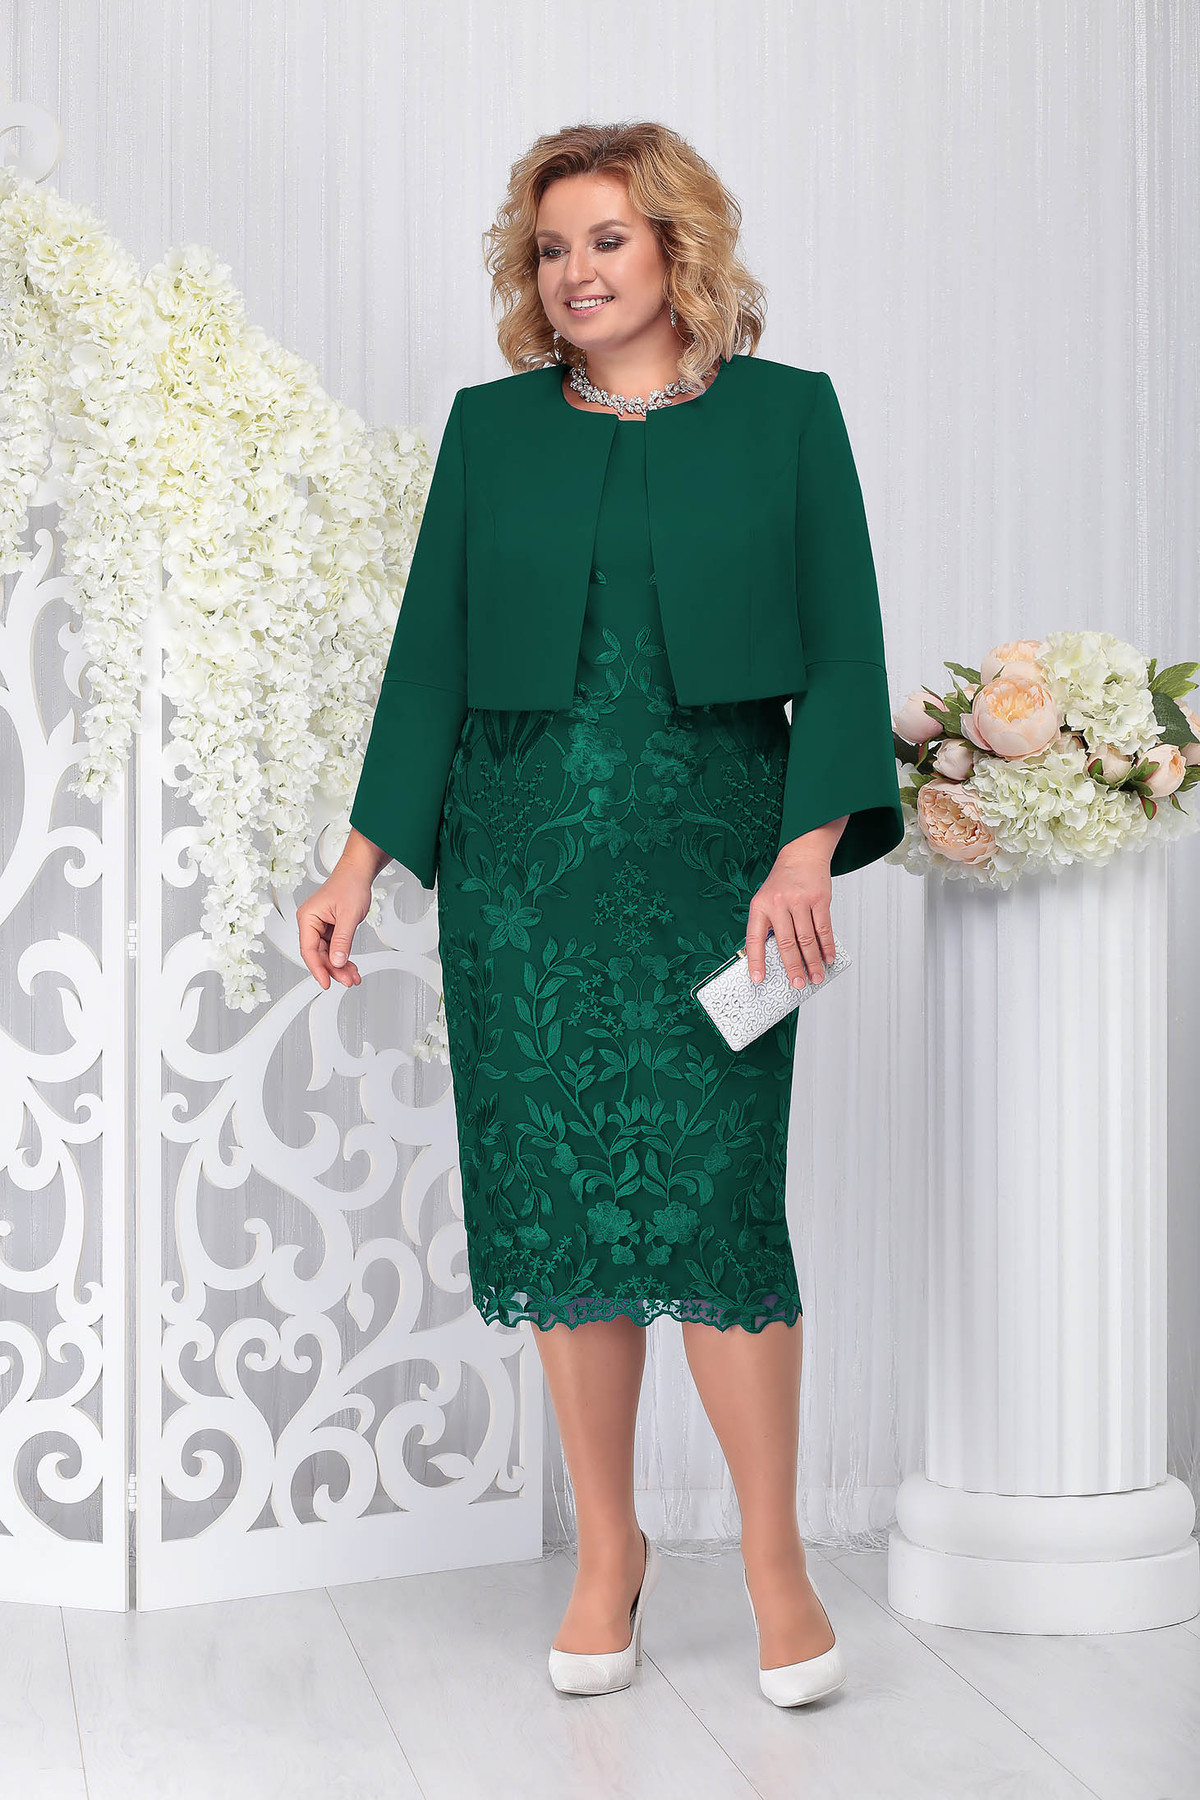 Compleu verde-inchis elegant din 2 piese cu rochie din stofa usor elastica din dantela